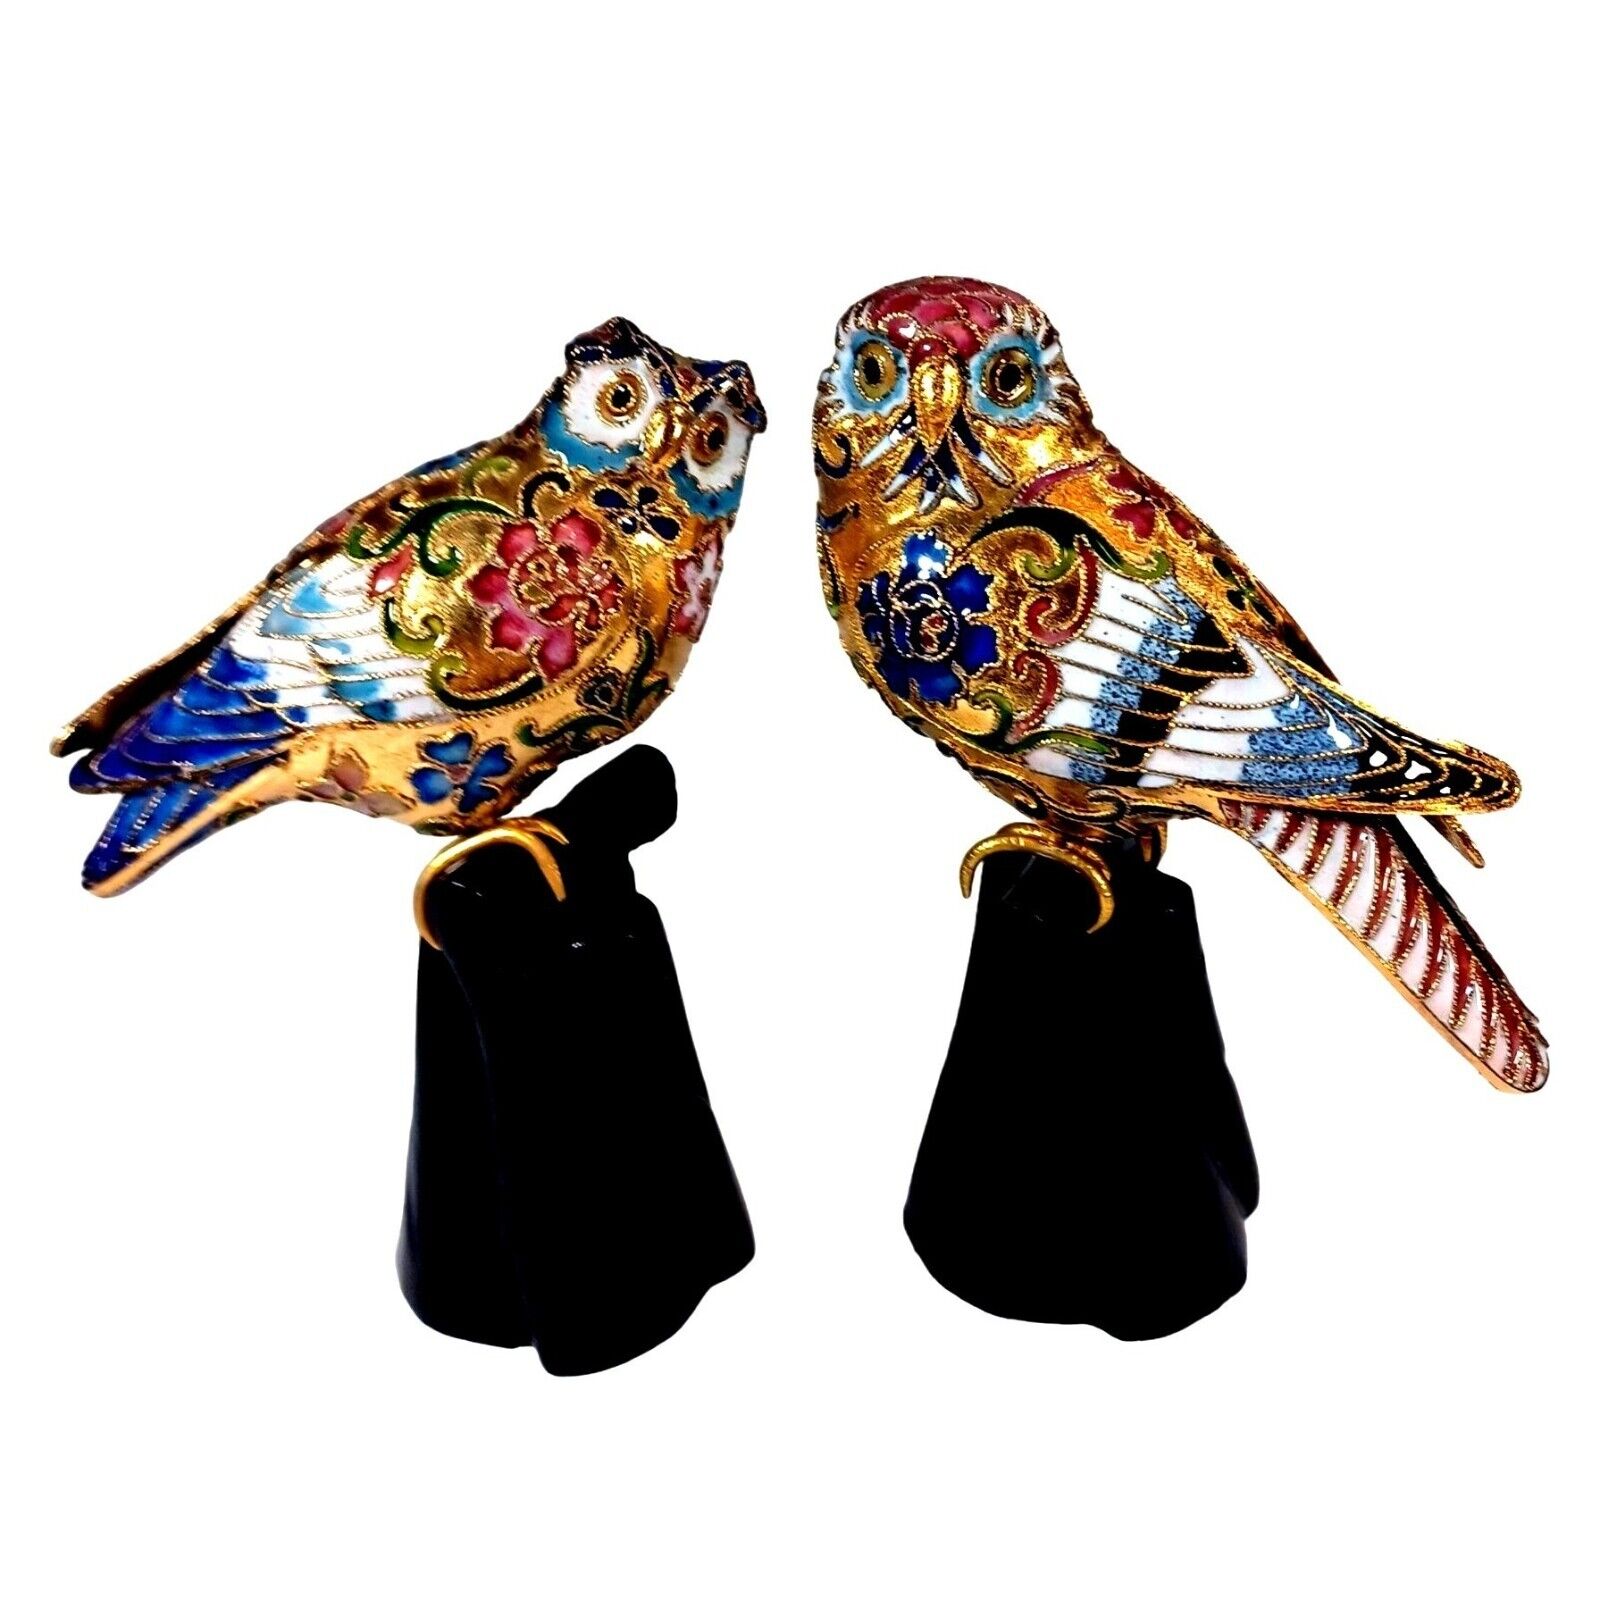 2 Vtg Cloisonne Enamel Gold Leaf Filigree Barn Great Horned Owl Figurines Perch